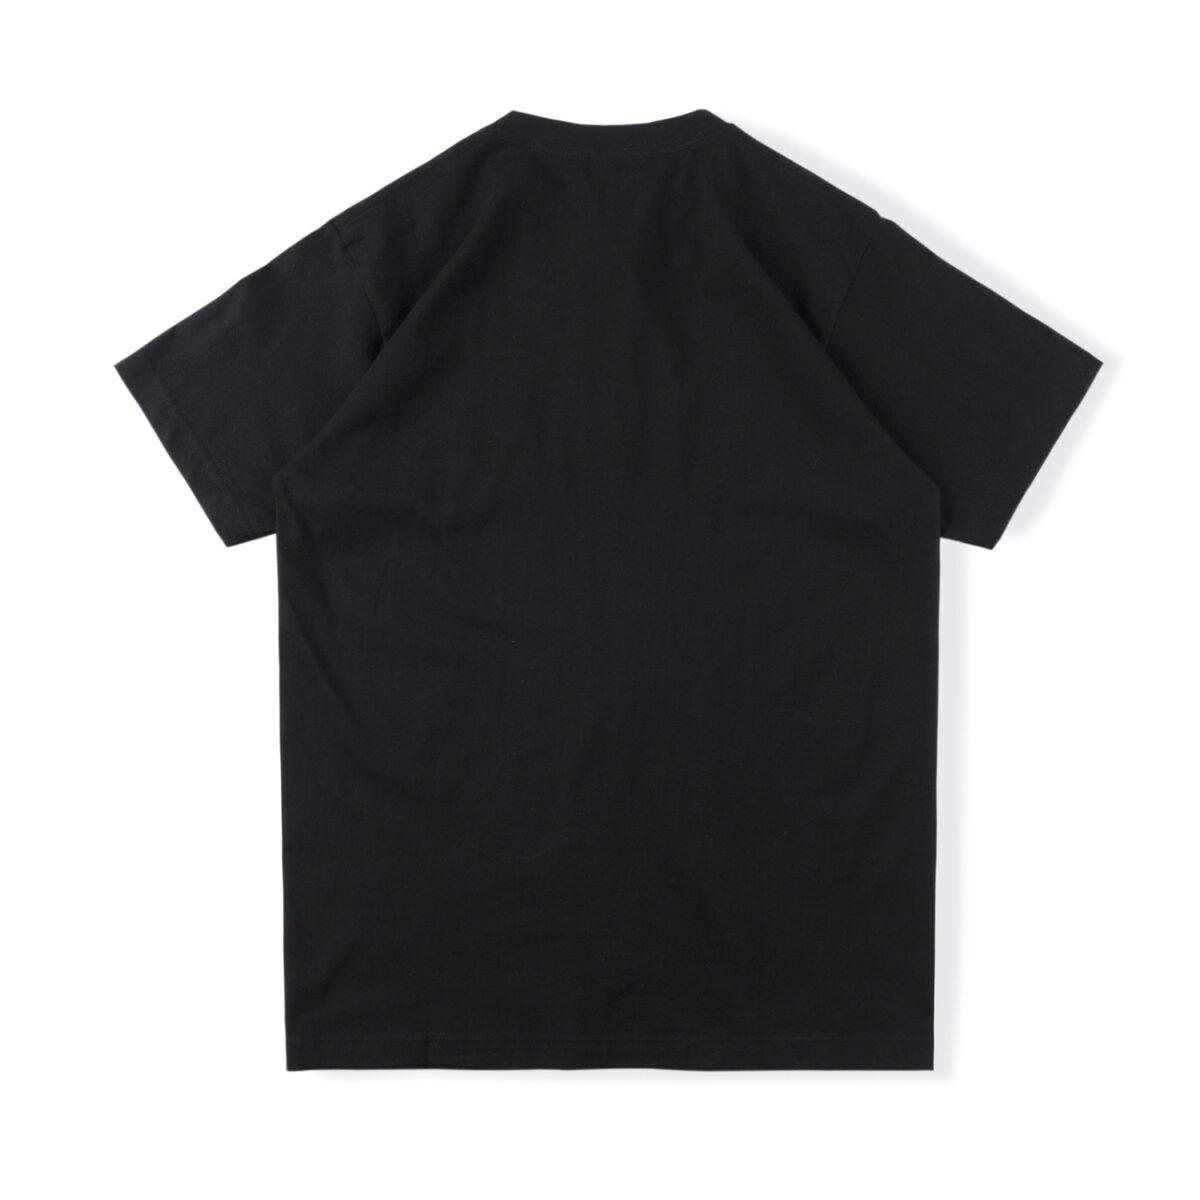 Sp5der 555 555 T-shirt Black